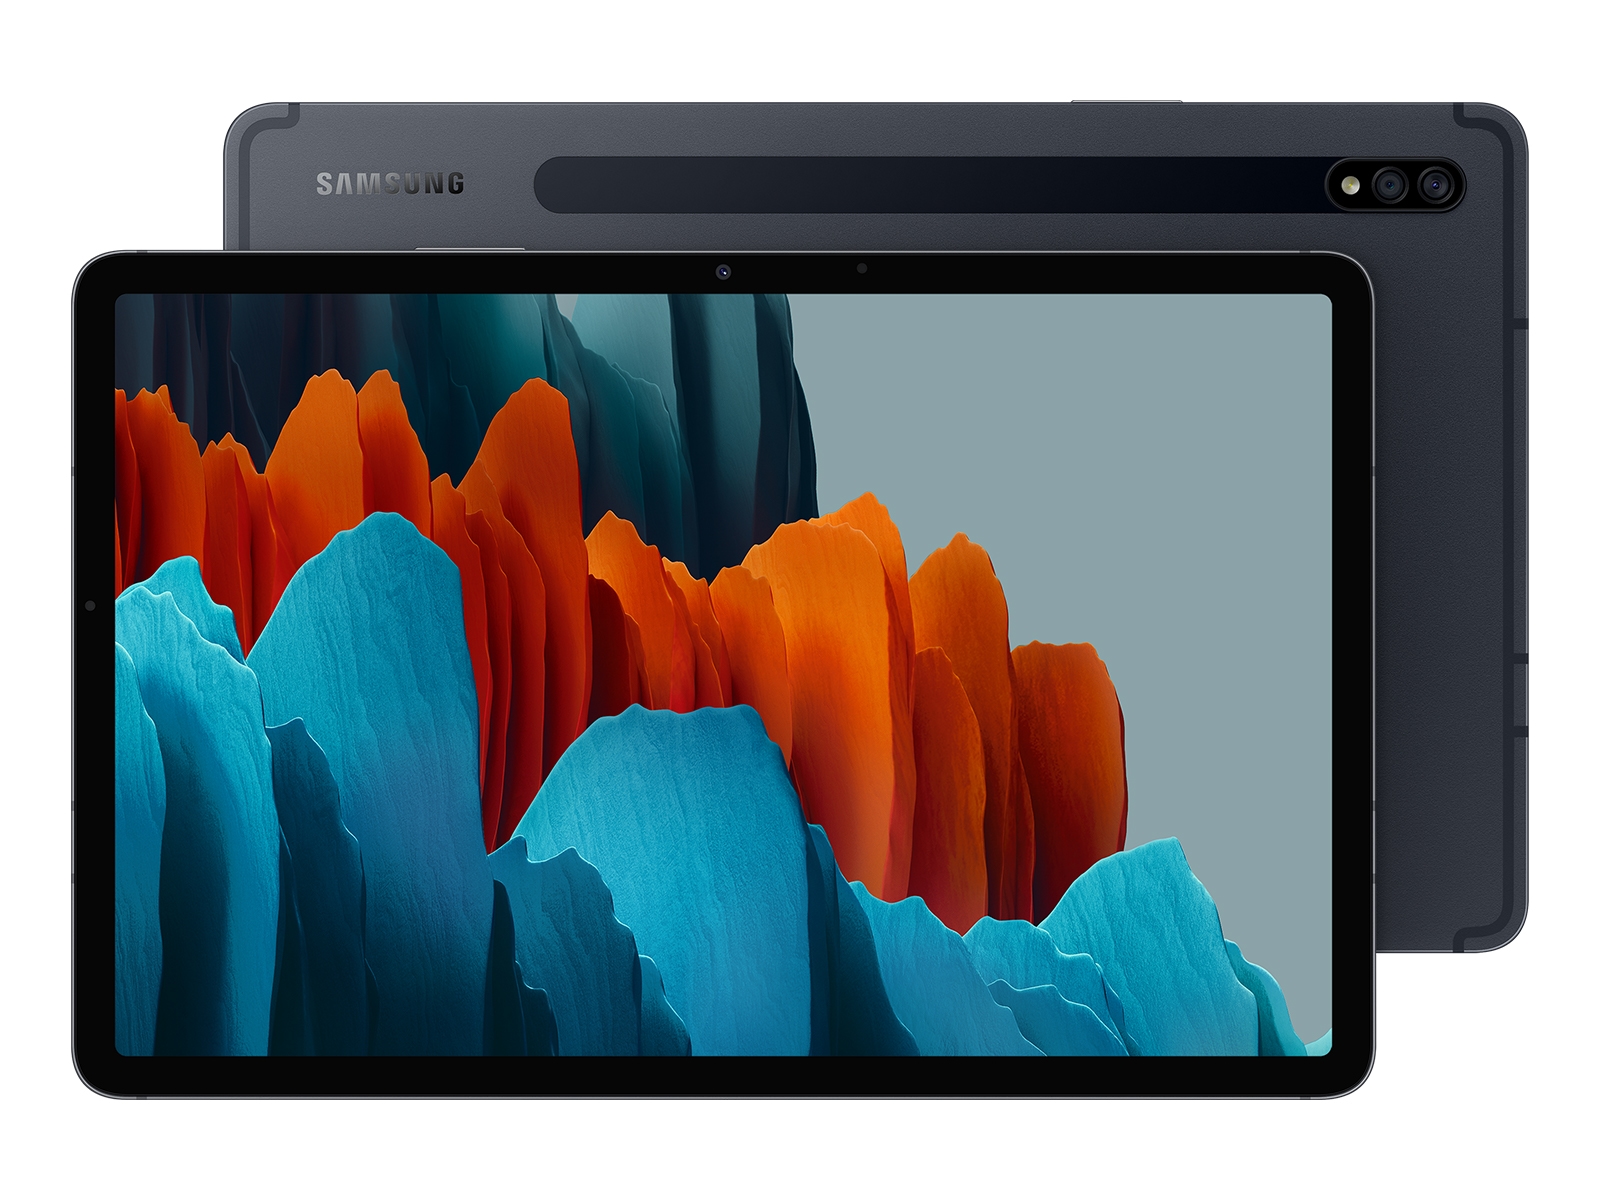 Galaxy Tab S7, 128GB, Mystic Black Tablets - SM-T870NZKAXAR 